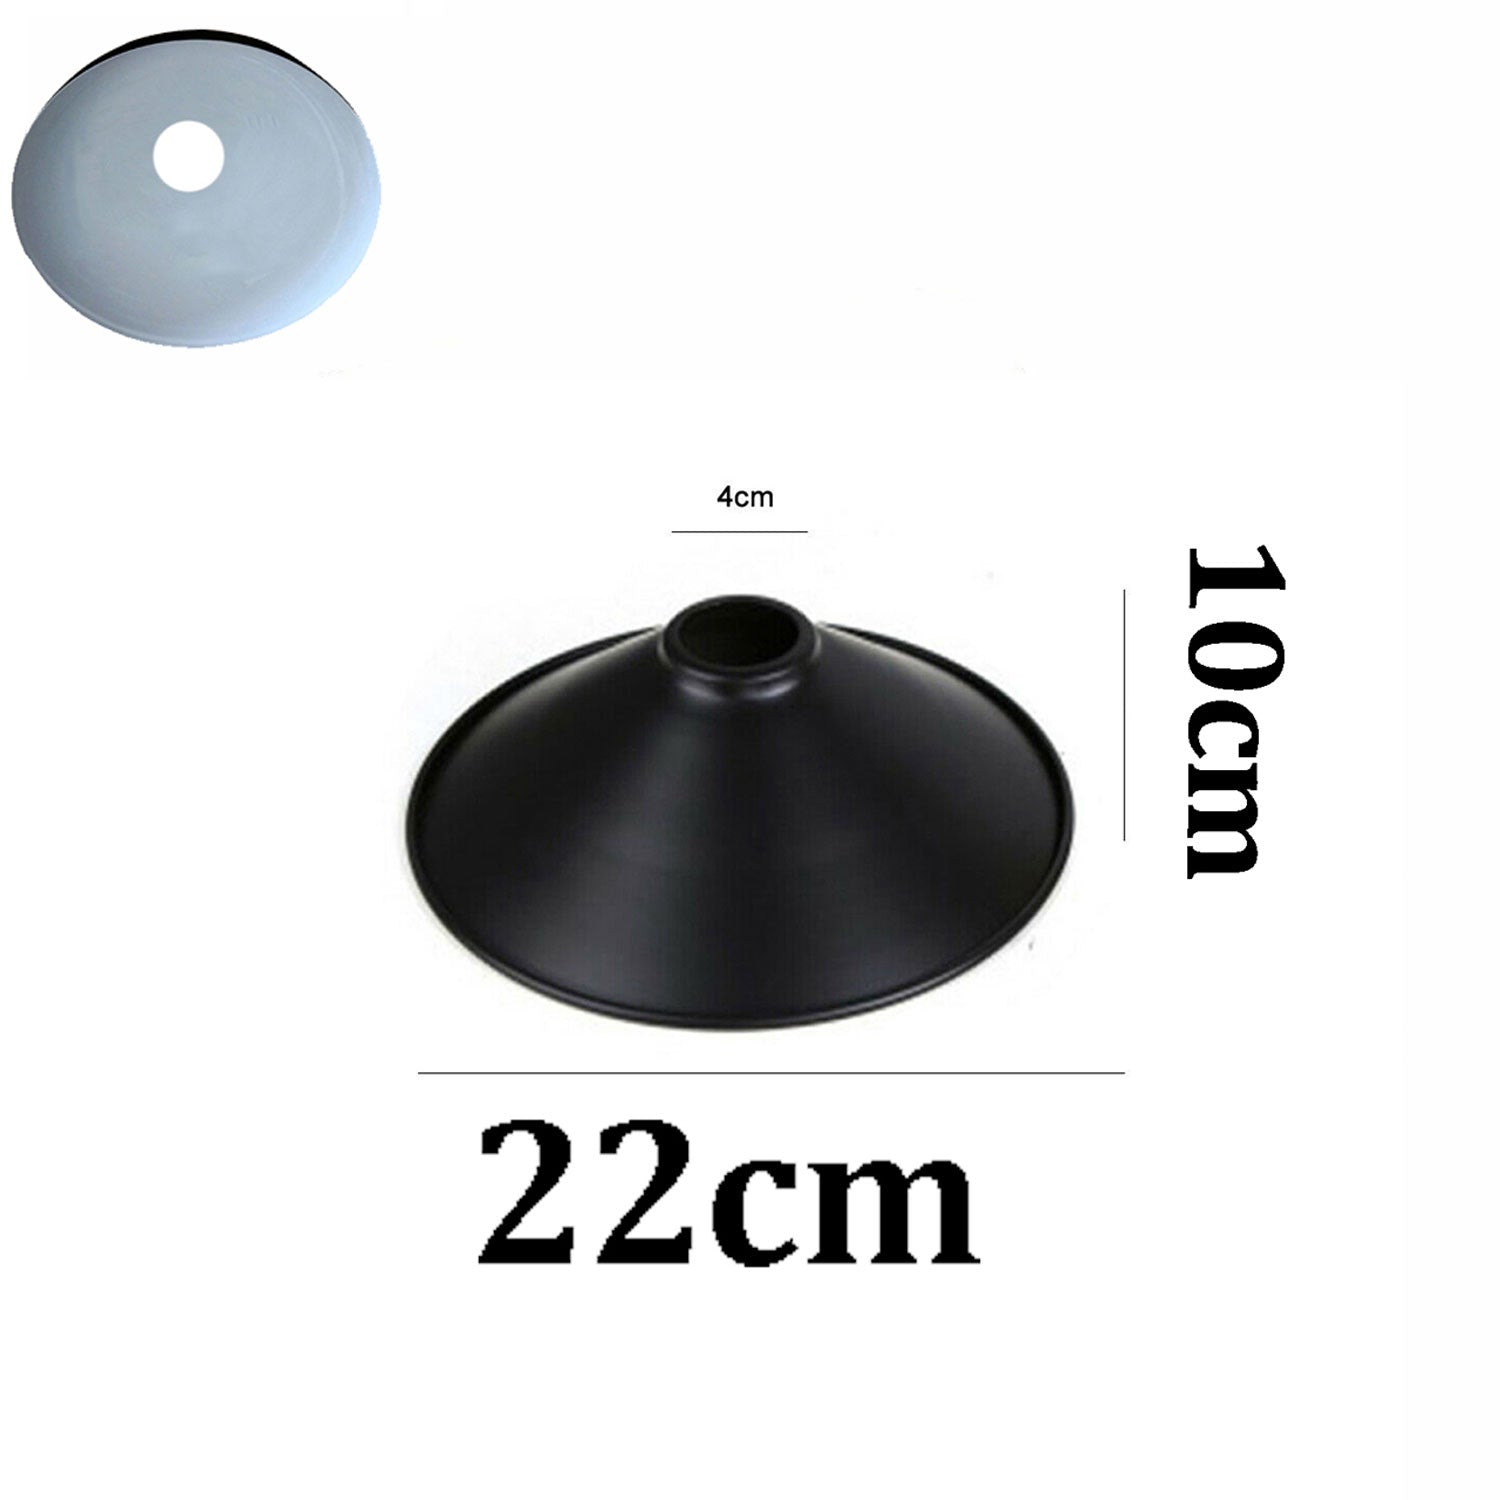 lamp shades - size image